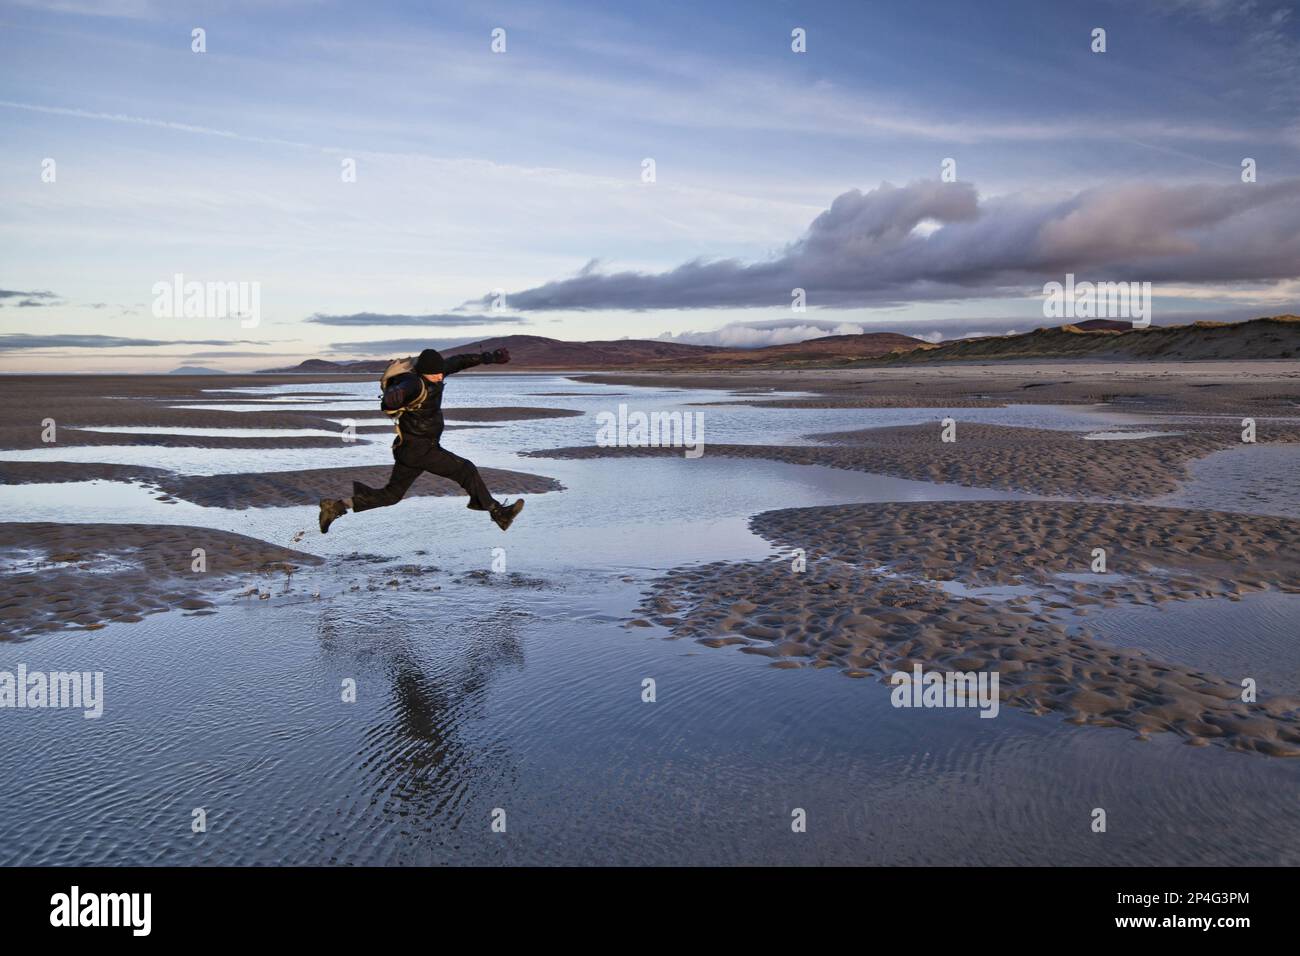 Homme sautant au-dessus des flaques de mer marécageux, Killinalan point, Loch Gruinart, île d'Islay, Hébrides intérieures, Écosse, Royaume-Uni Banque D'Images